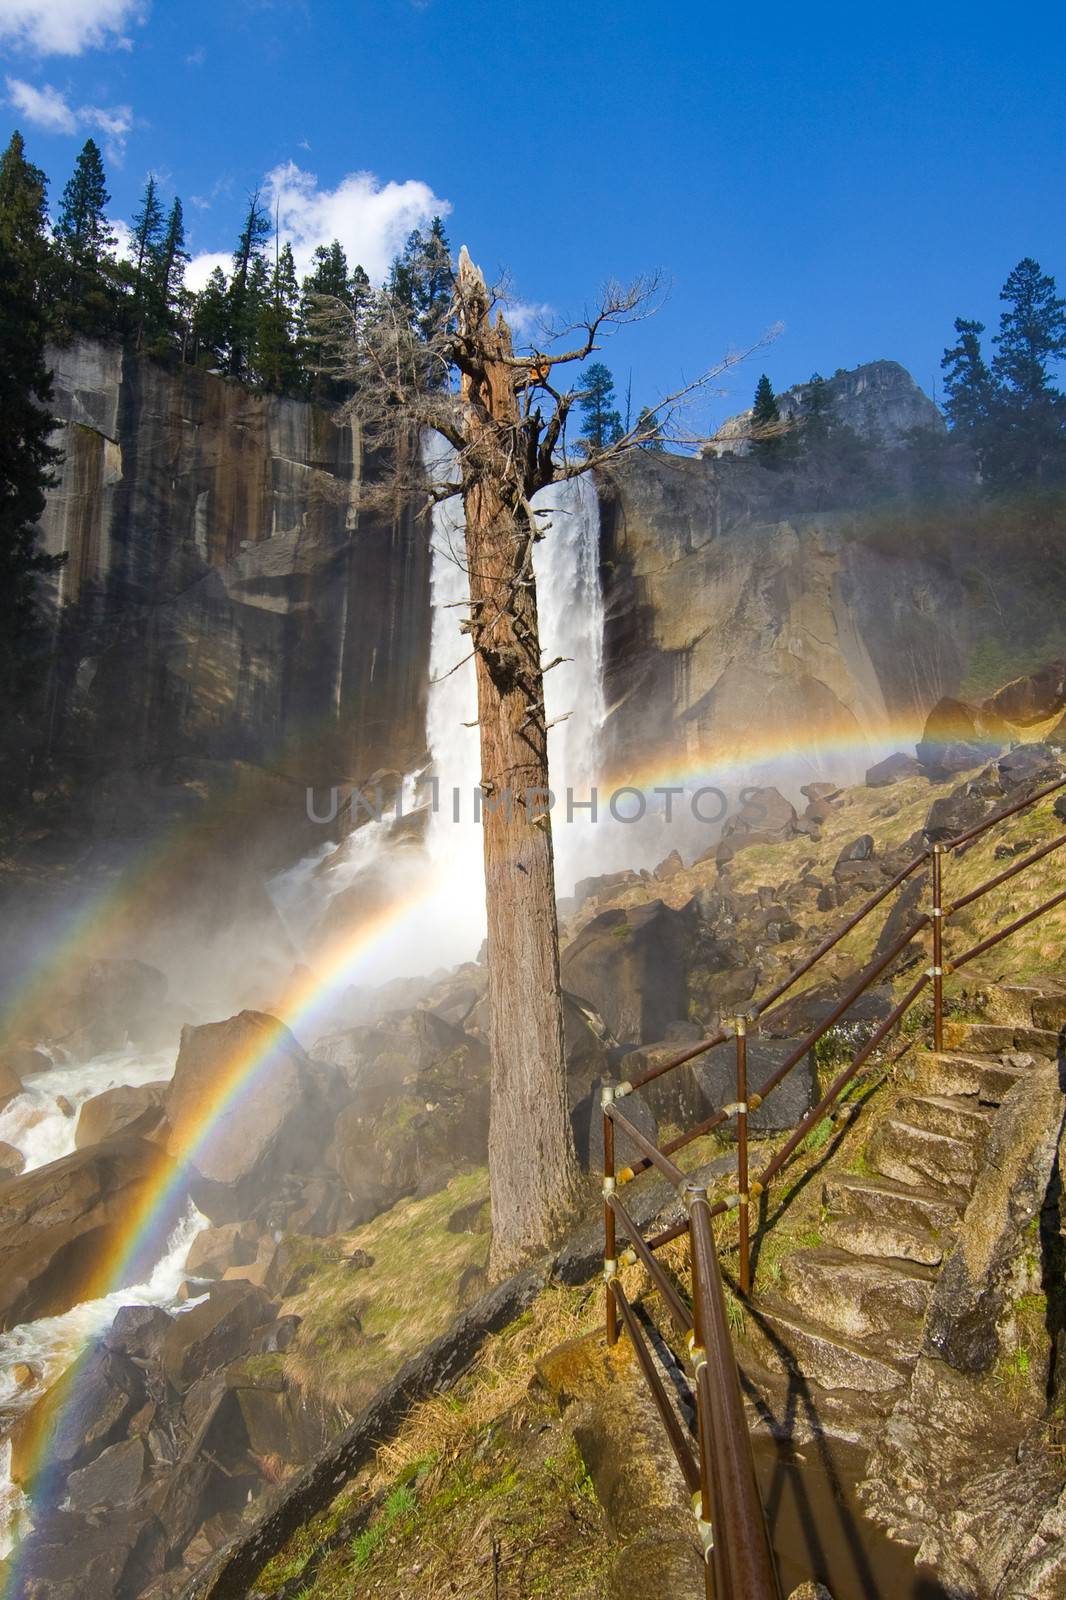 Mist Trail rainbows by CelsoDiniz